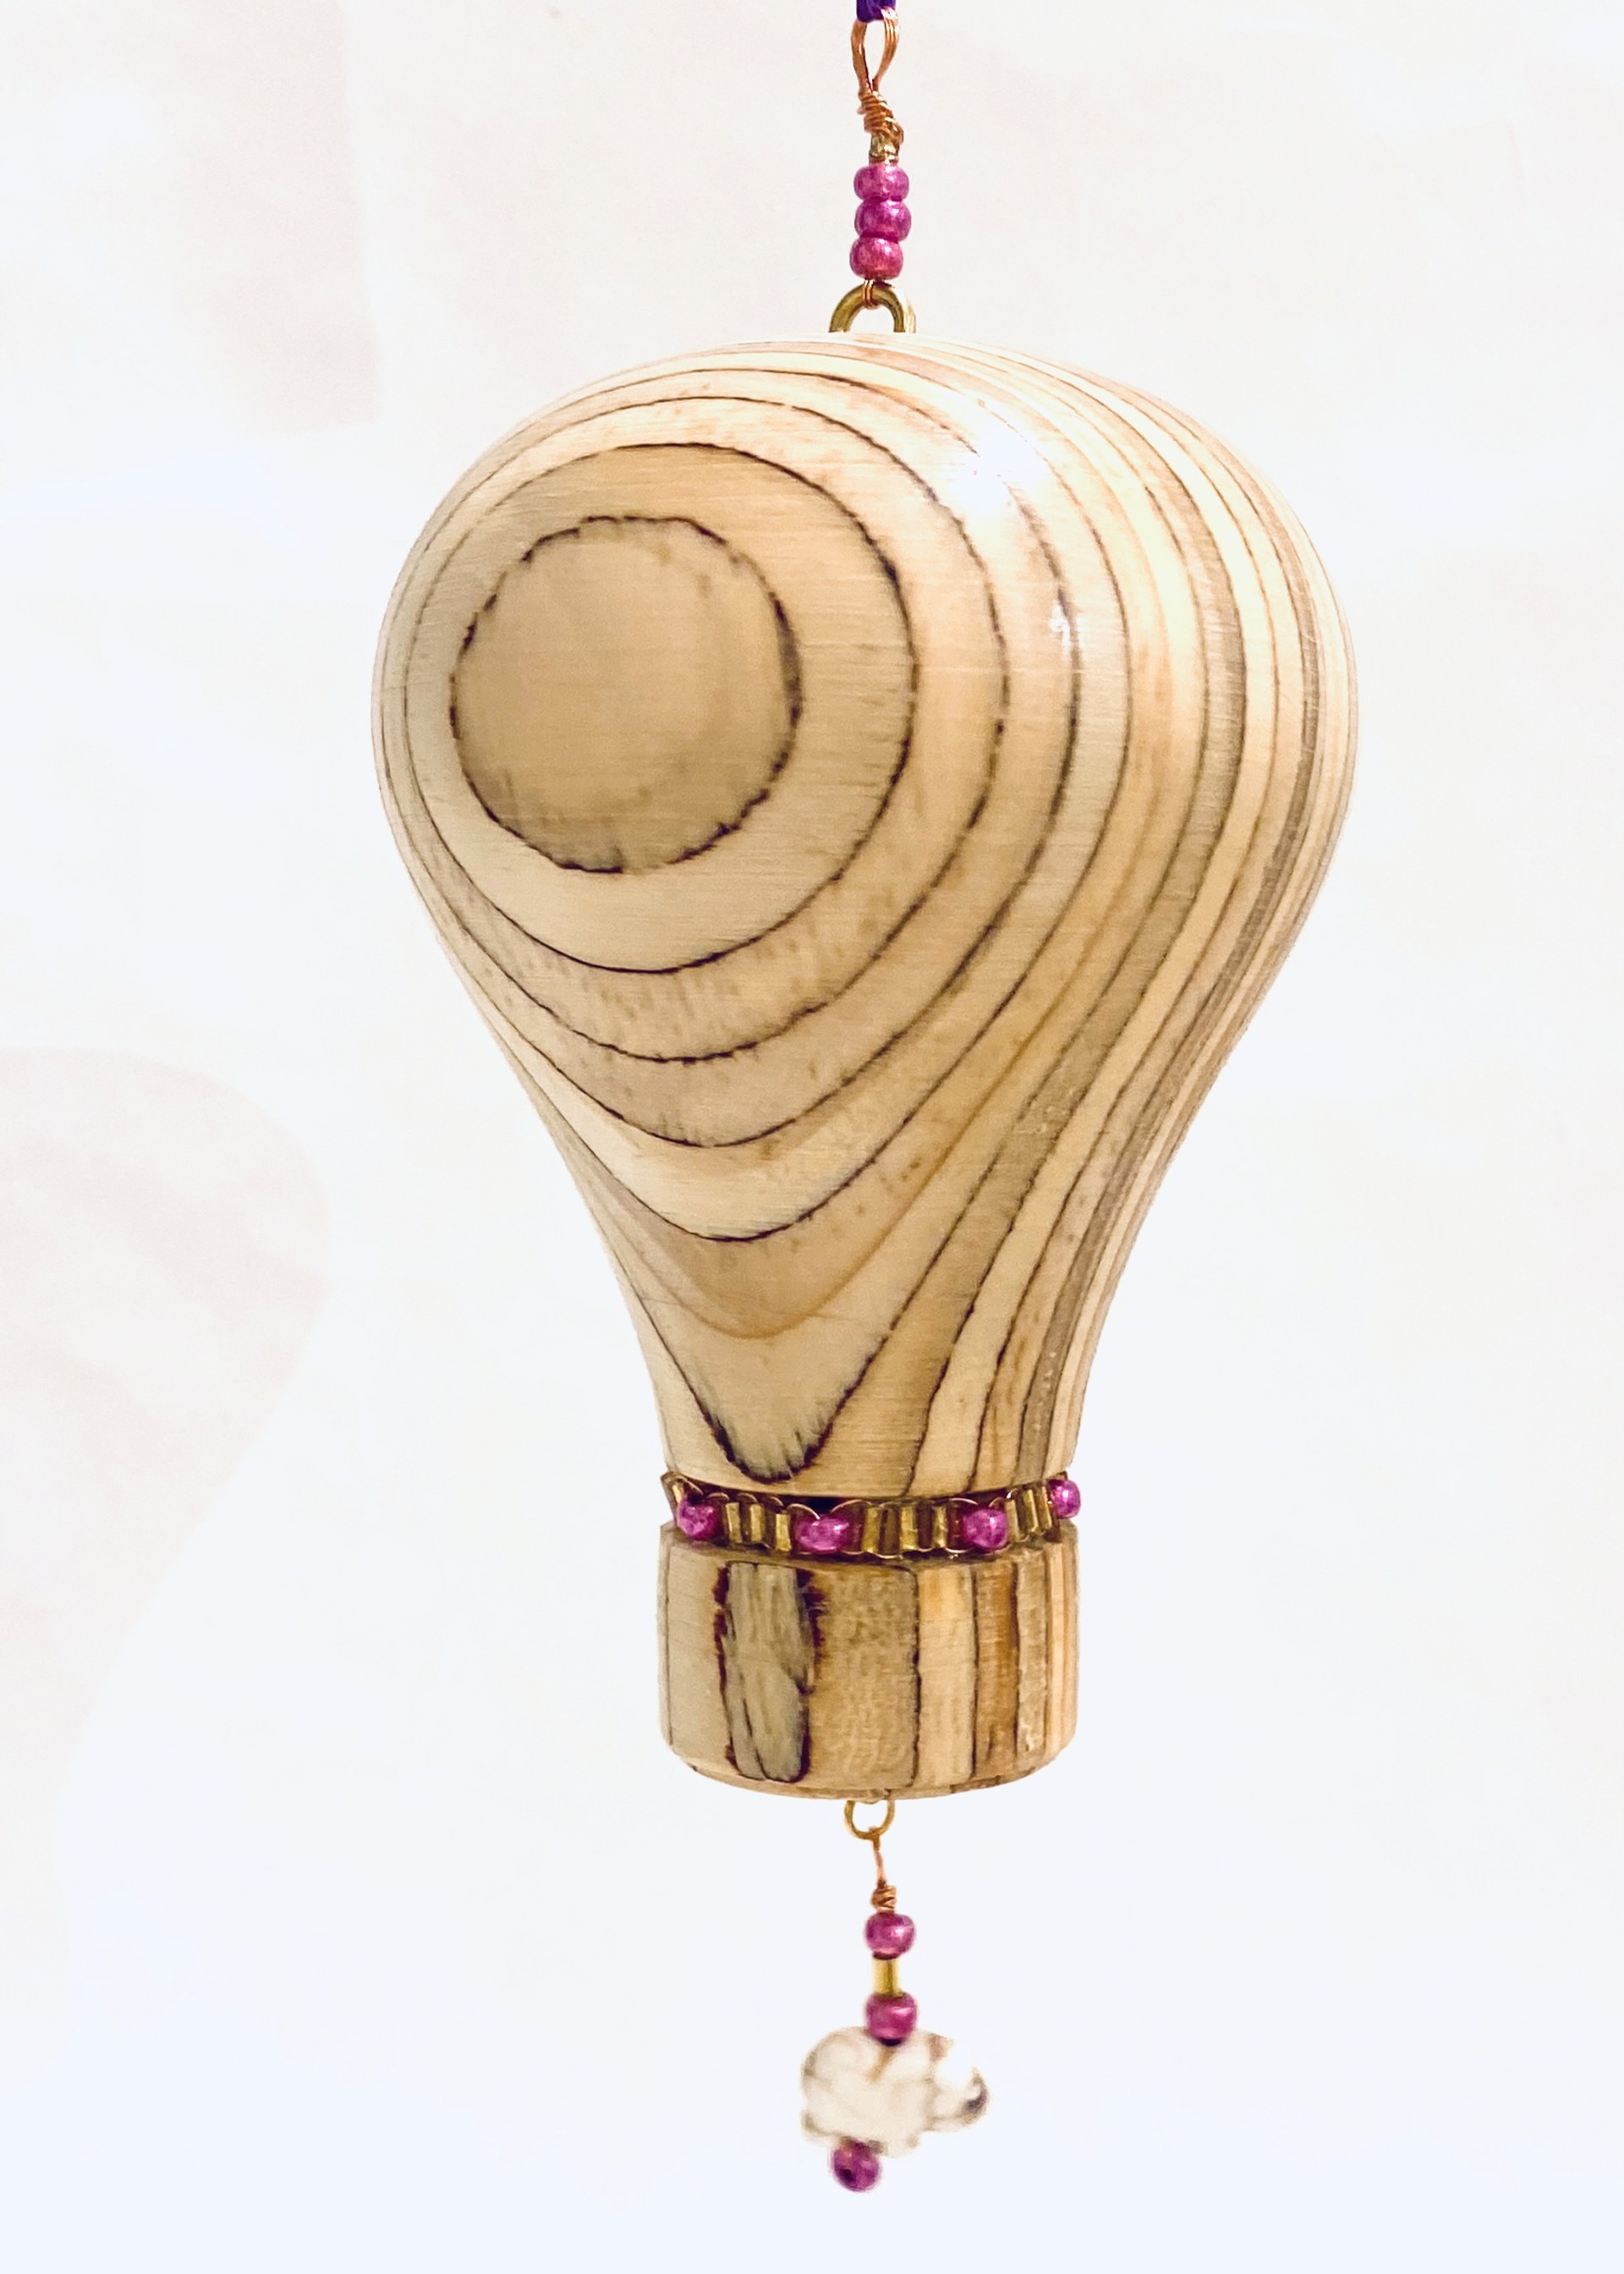 MT23-6 Whimsical Hot Air Balloon Ornament by Marc Tannenbaum